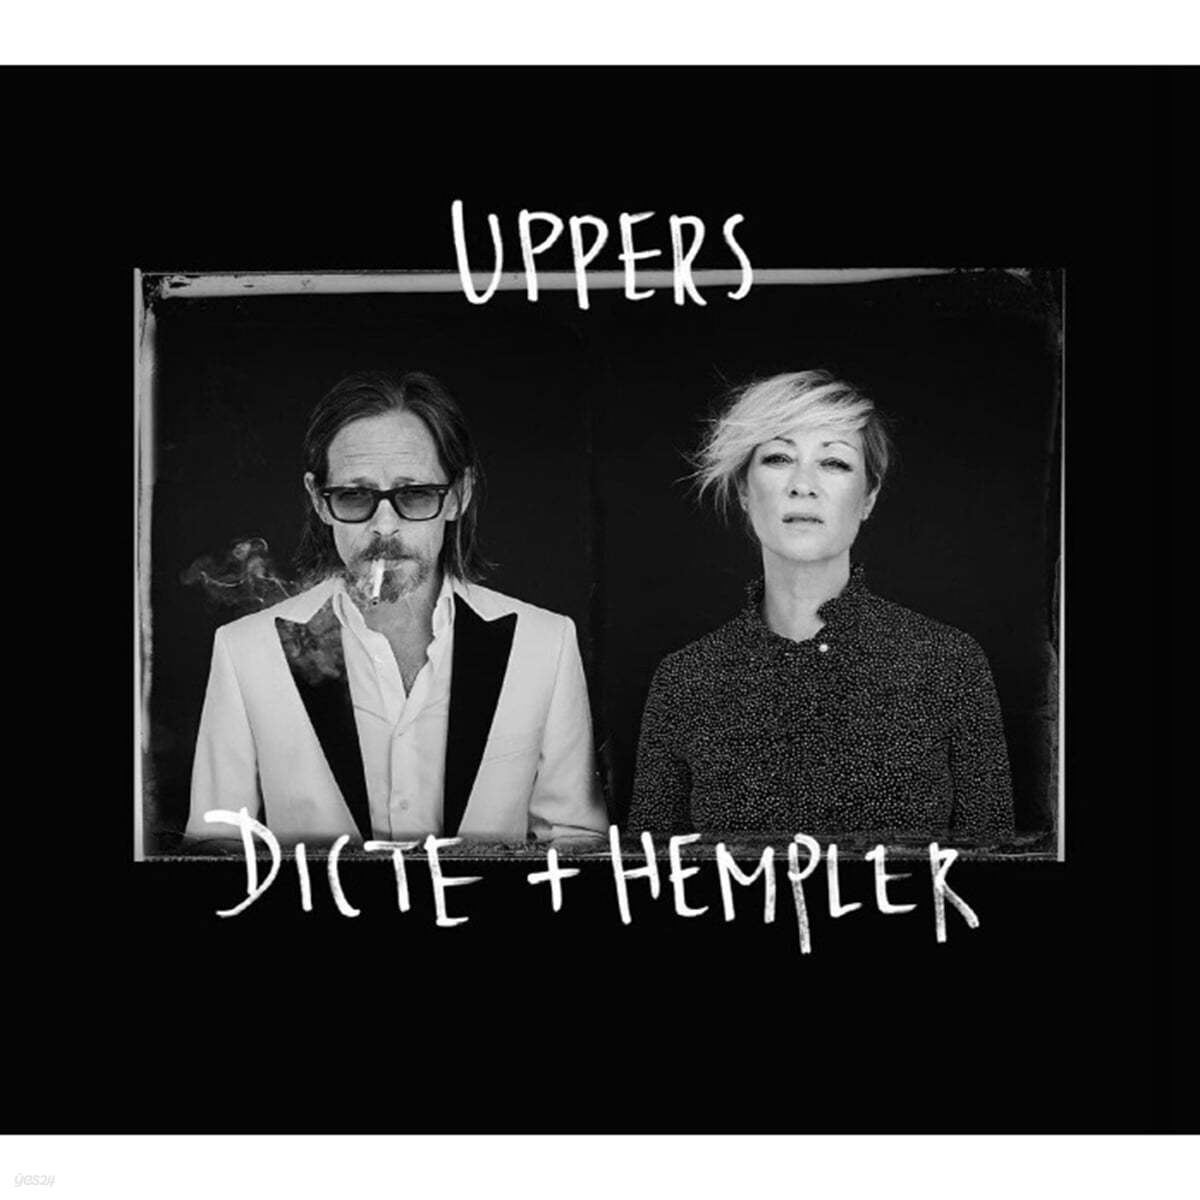 Dicte+Hempler (딕테+헴플러) - 1집 Uppers [LP] 